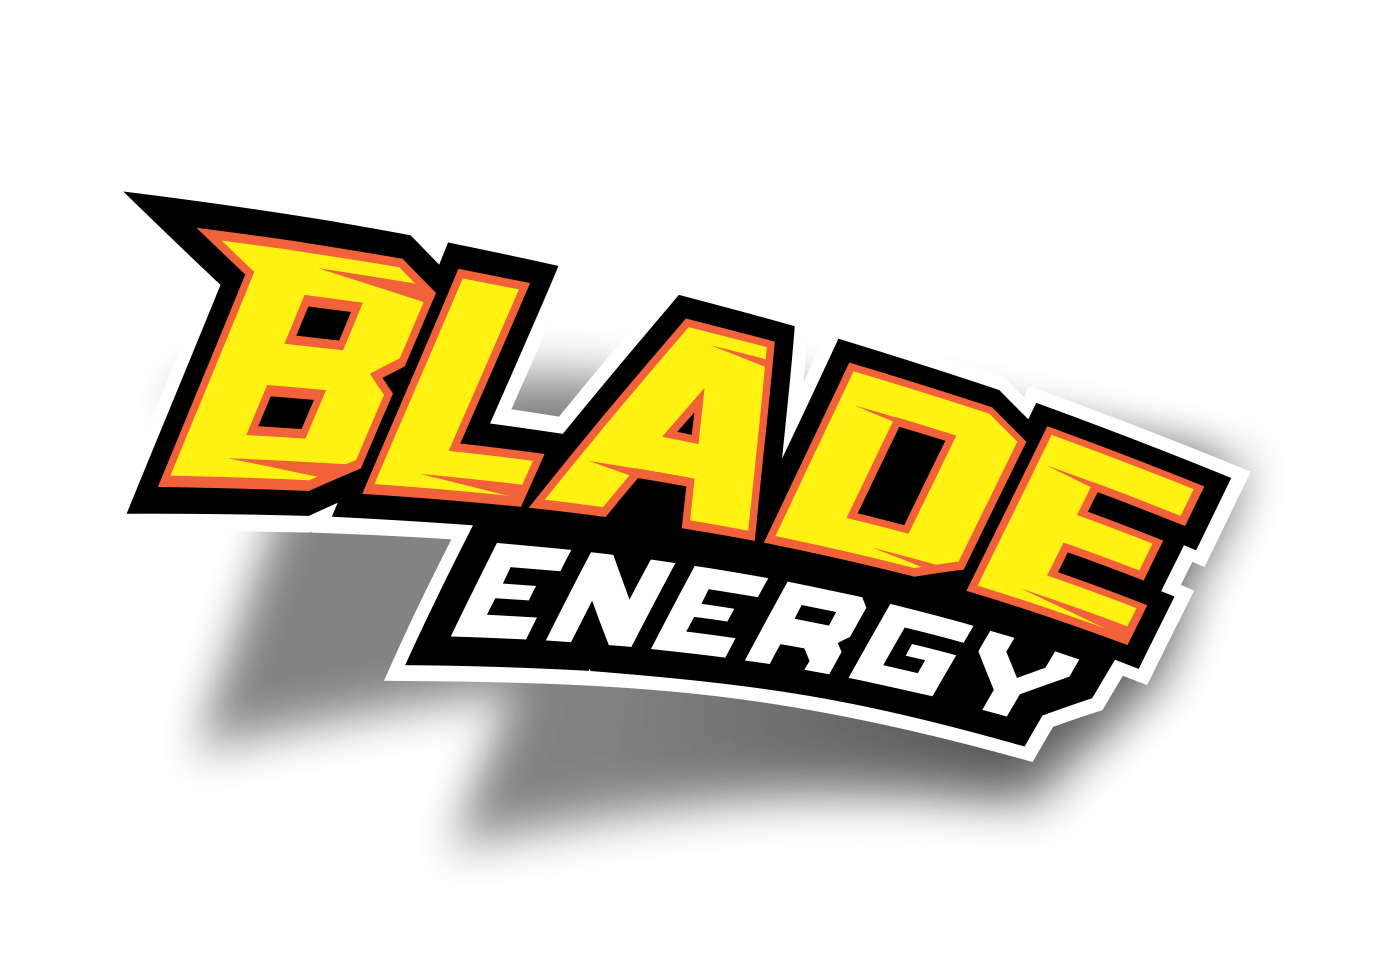 Blade Energy